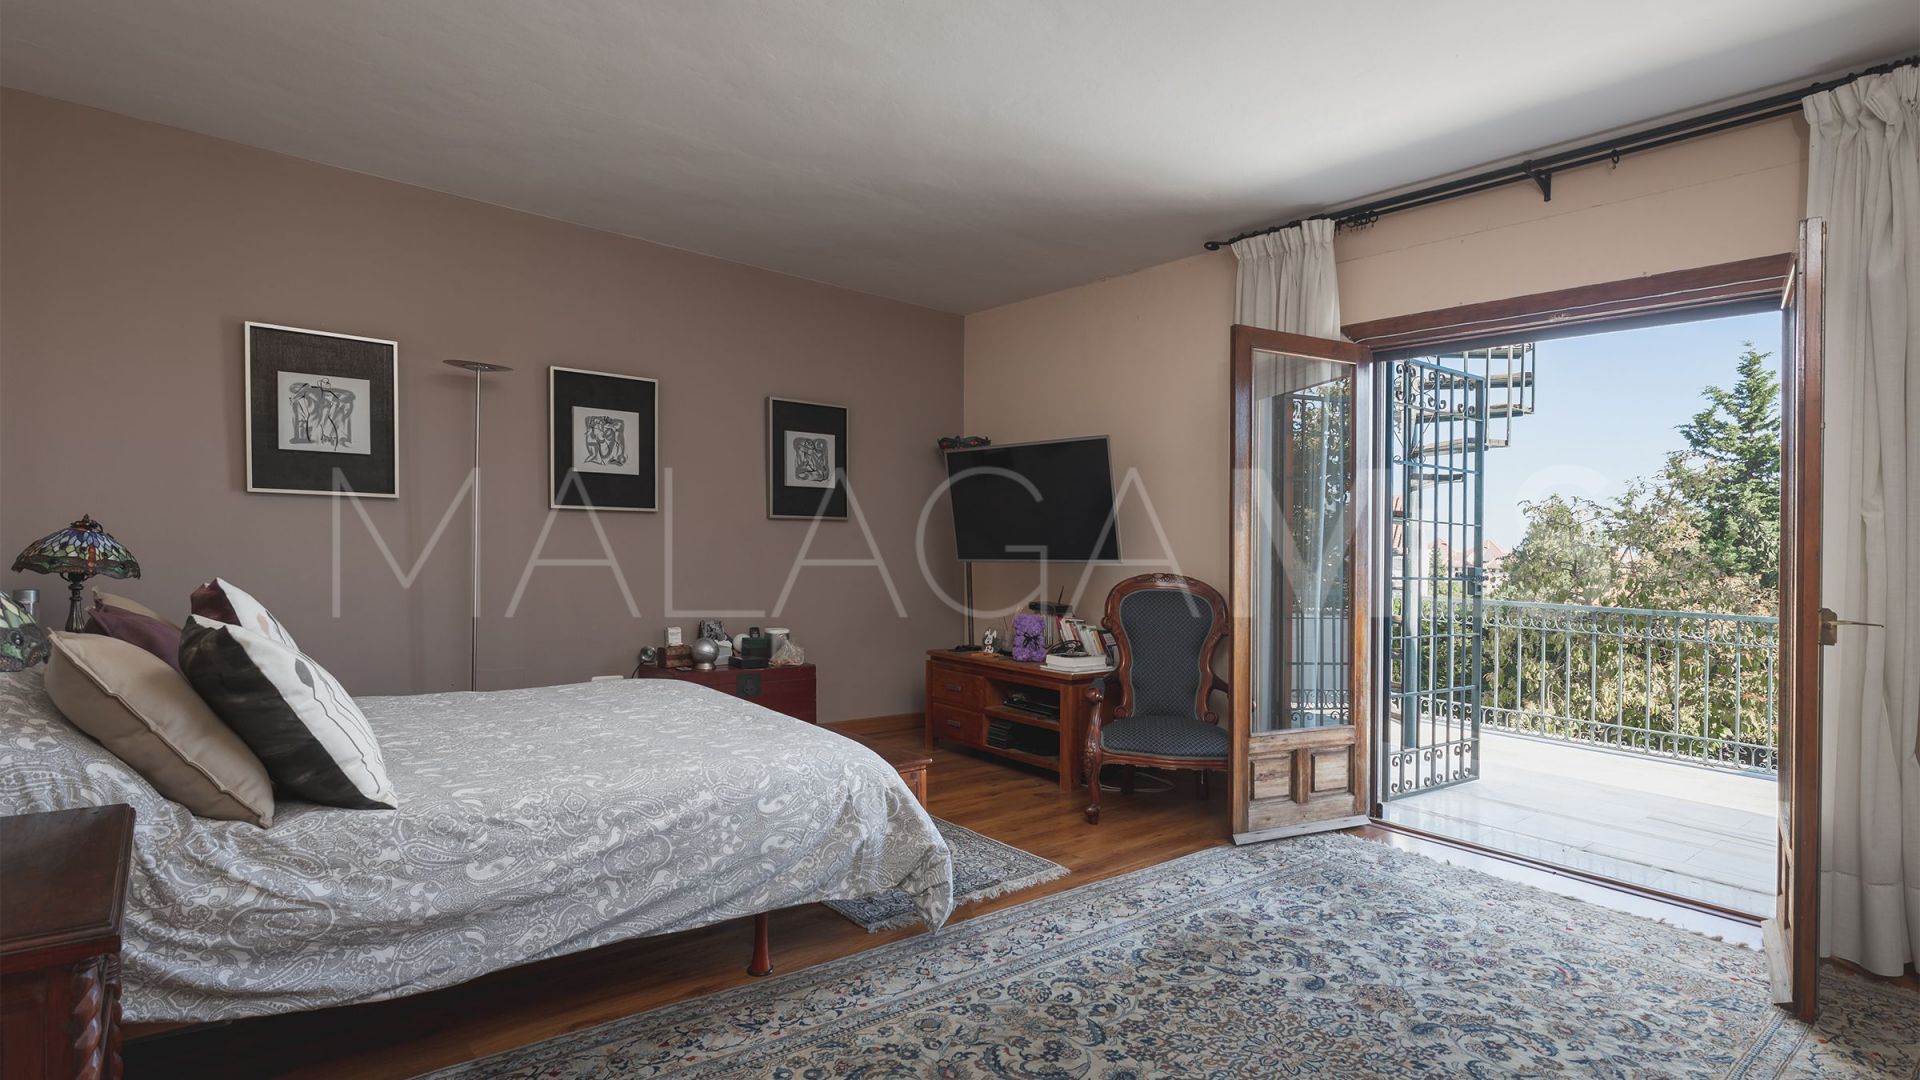 8 bedrooms villa in Valdeolletas for sale